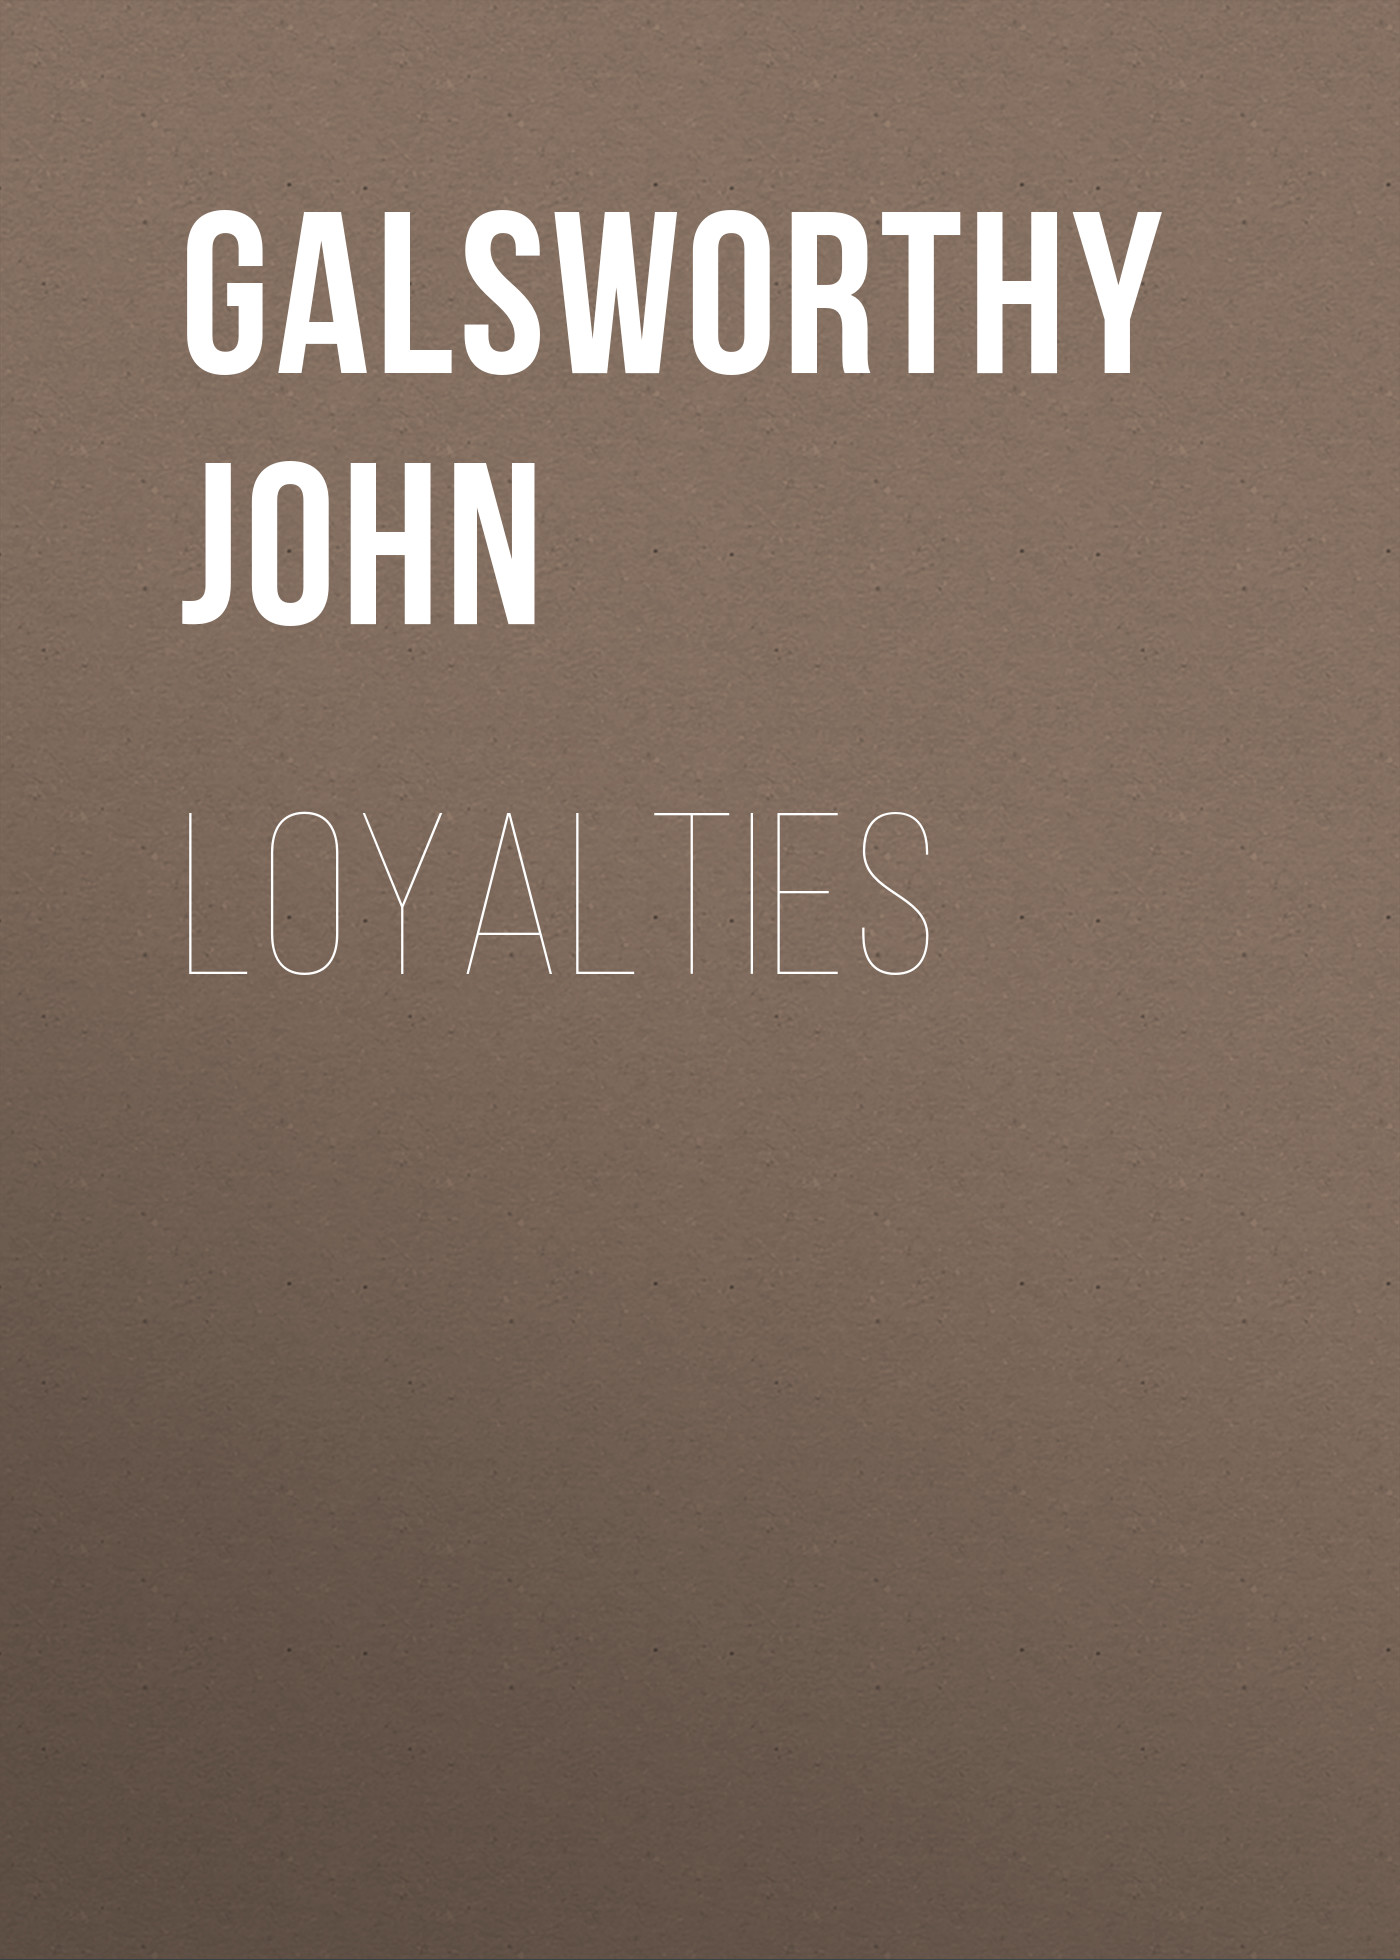 Книга Loyalties из серии , созданная John Galsworthy, может относится к жанру Зарубежная старинная литература, Зарубежная классика. Стоимость электронной книги Loyalties с идентификатором 25203087 составляет 0 руб.